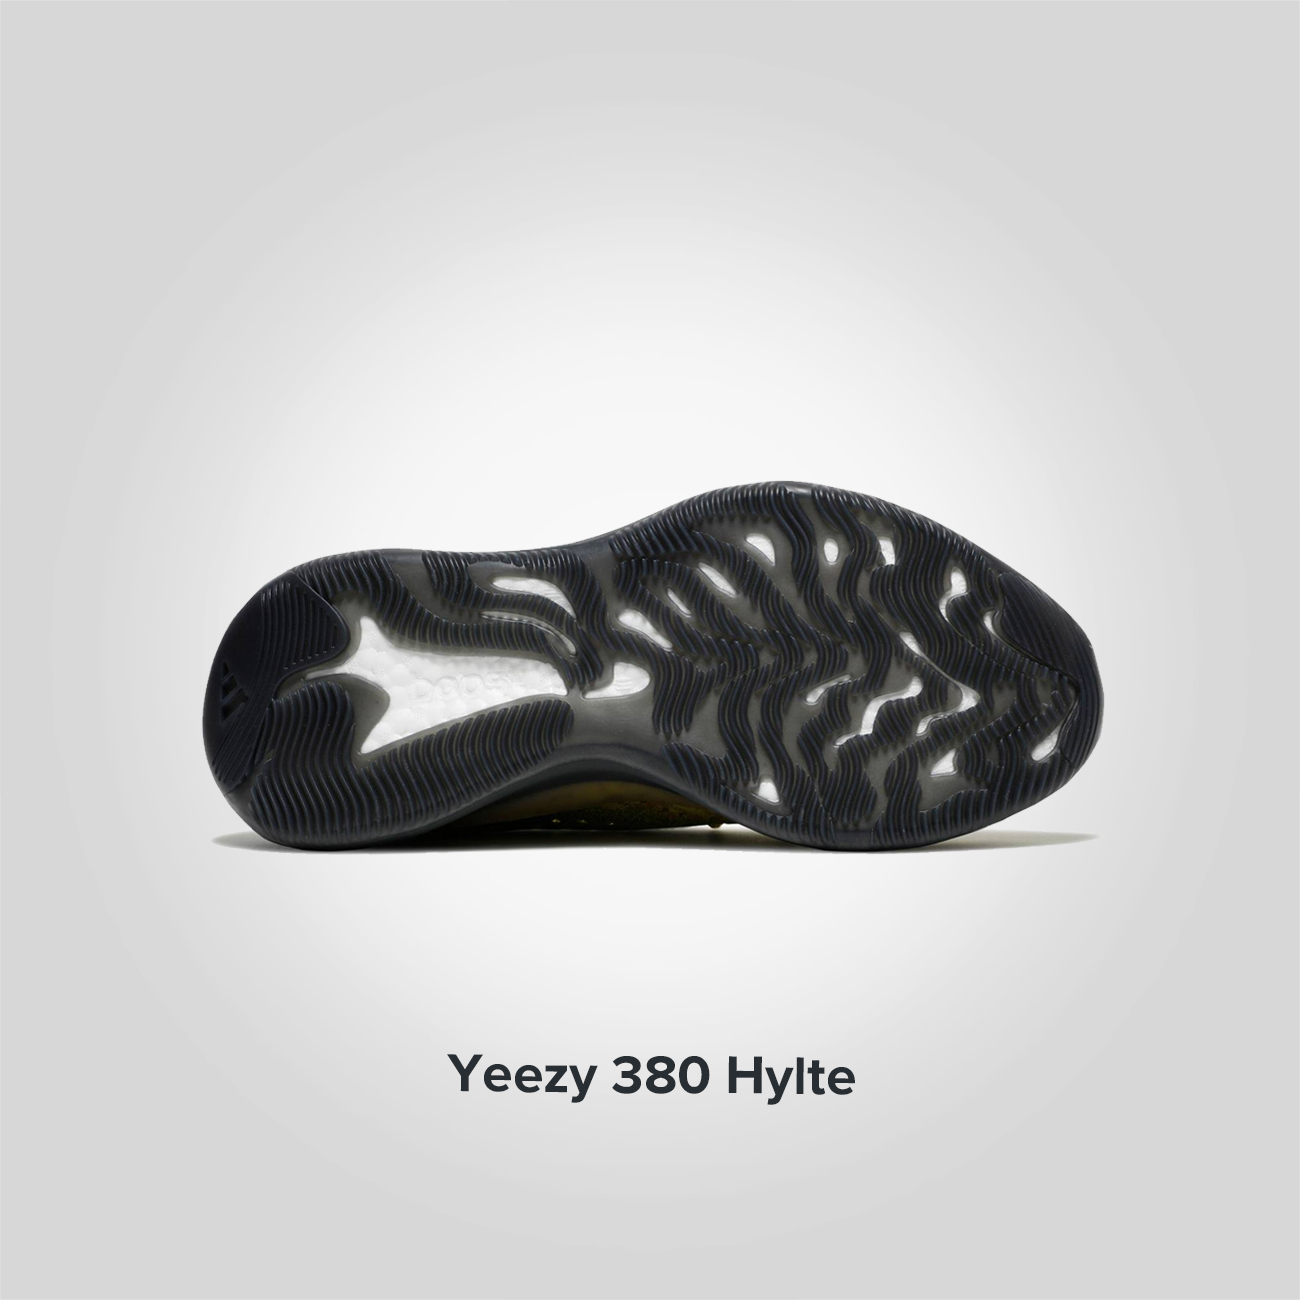 Yeezy 380 Hylte